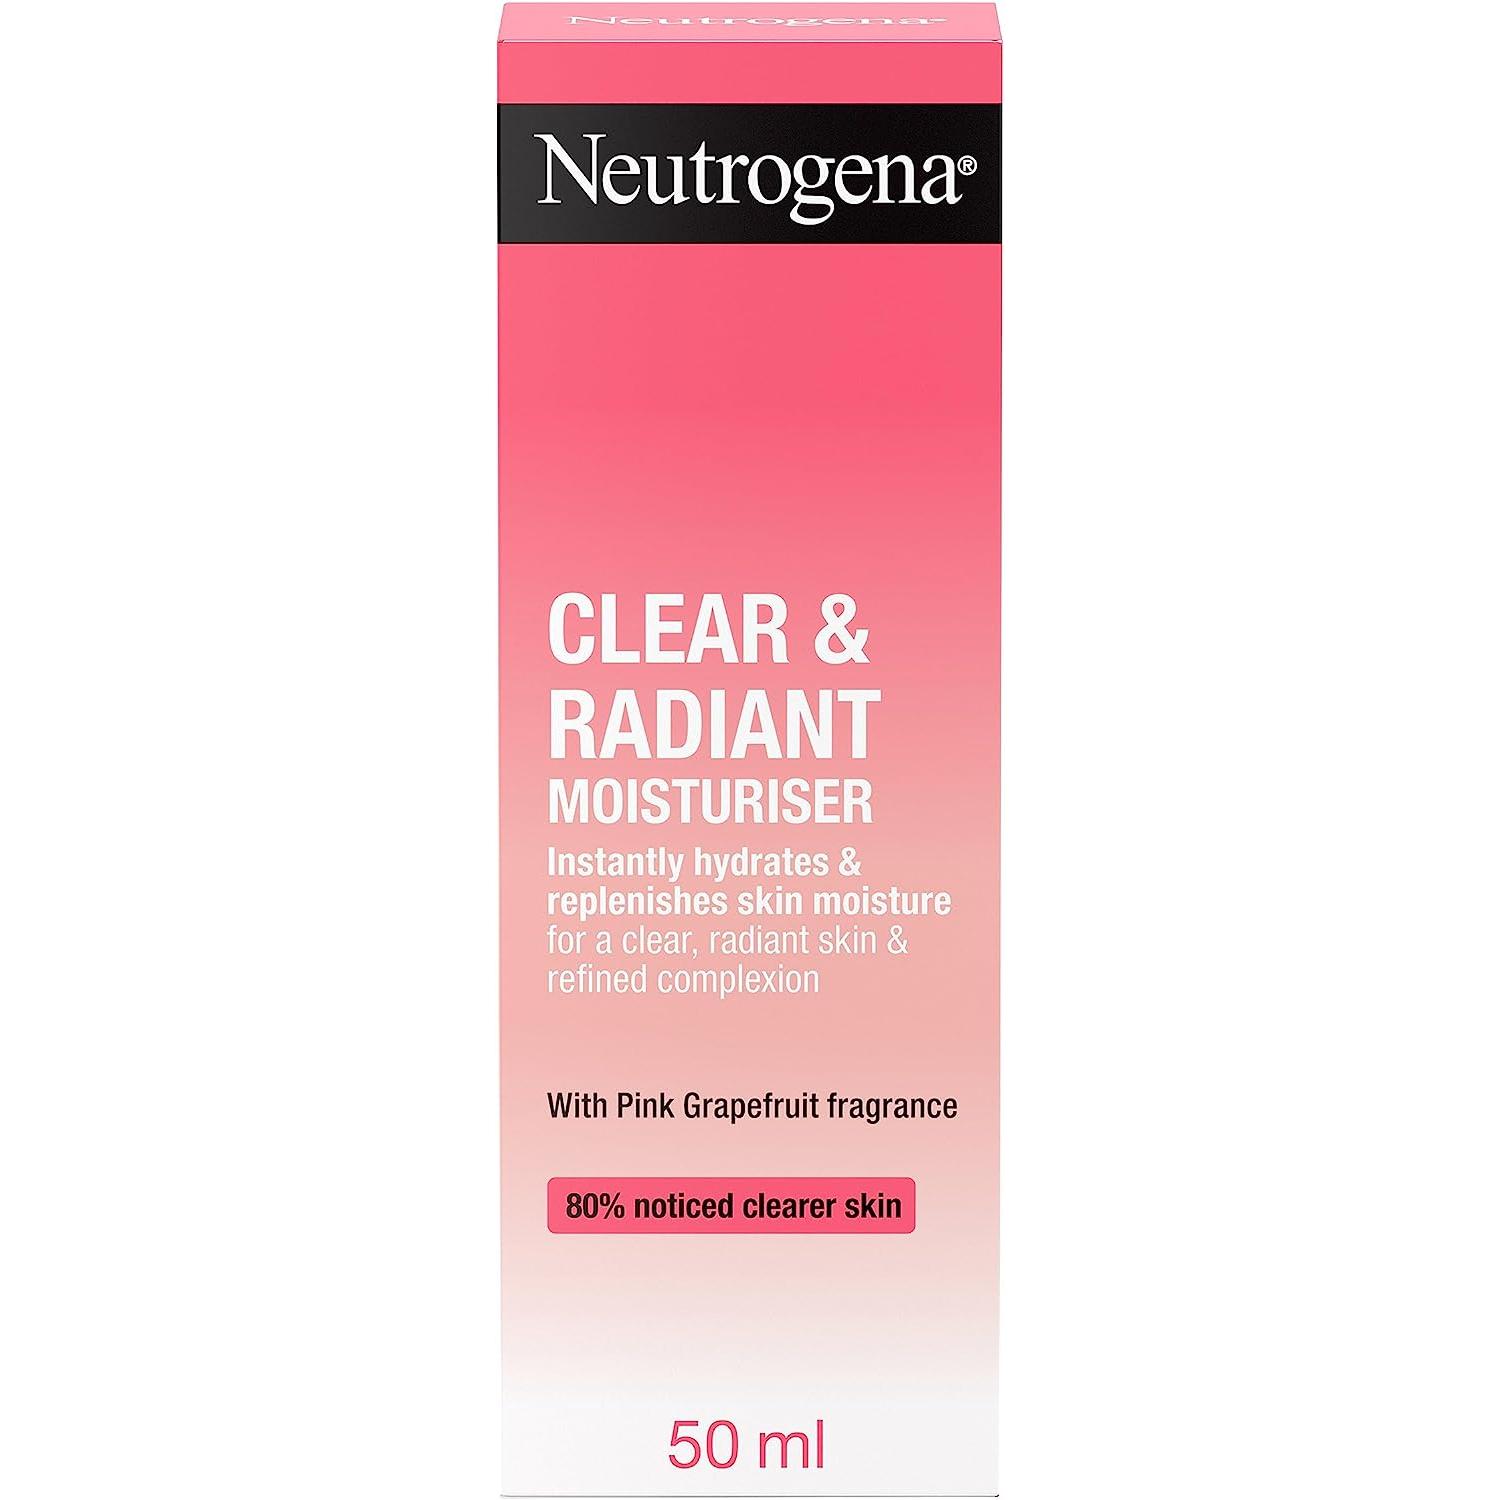 Crema hidratante facial Neutrogena Clear & Radiant con pomelo rojo por sólo 5,46€ ¡¡50% de descuento!!